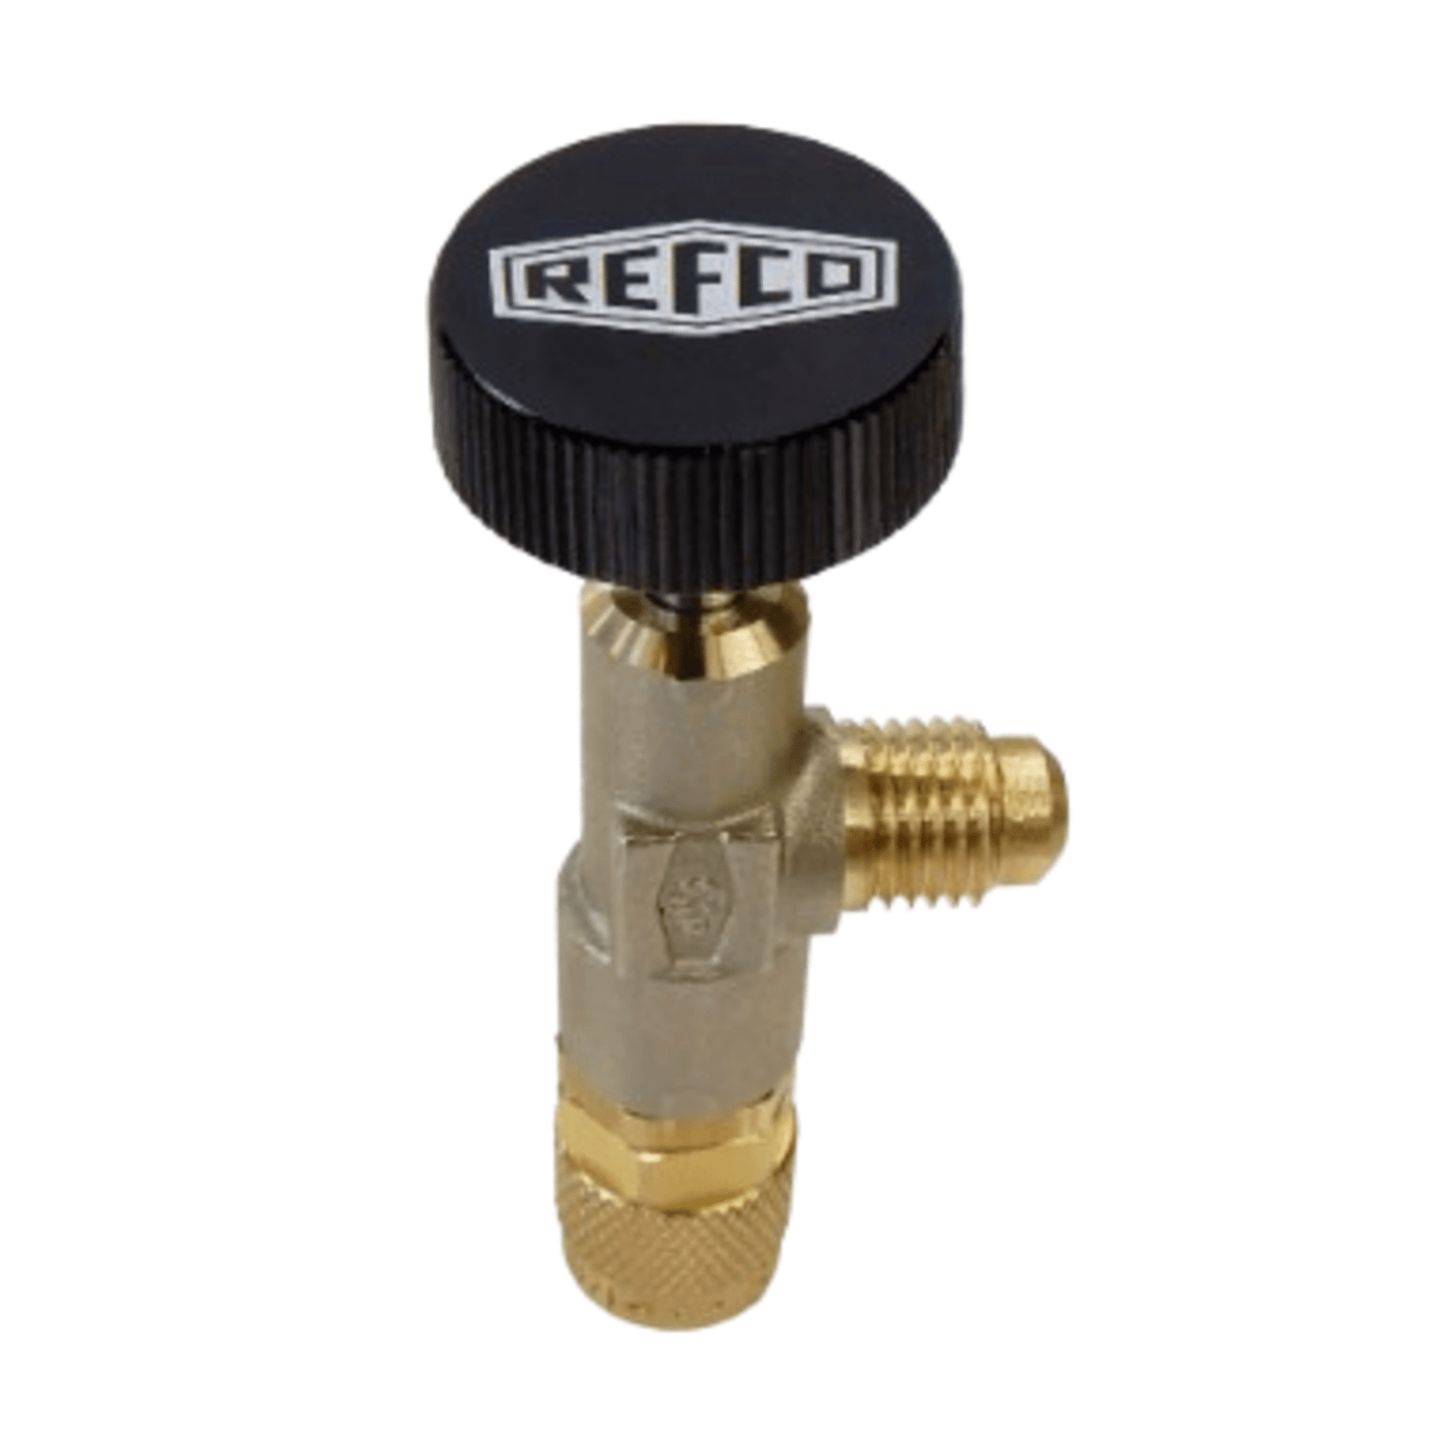 Refco 4687957, A-38010, Access control valve 1/4" SAE x 1/4" SAE